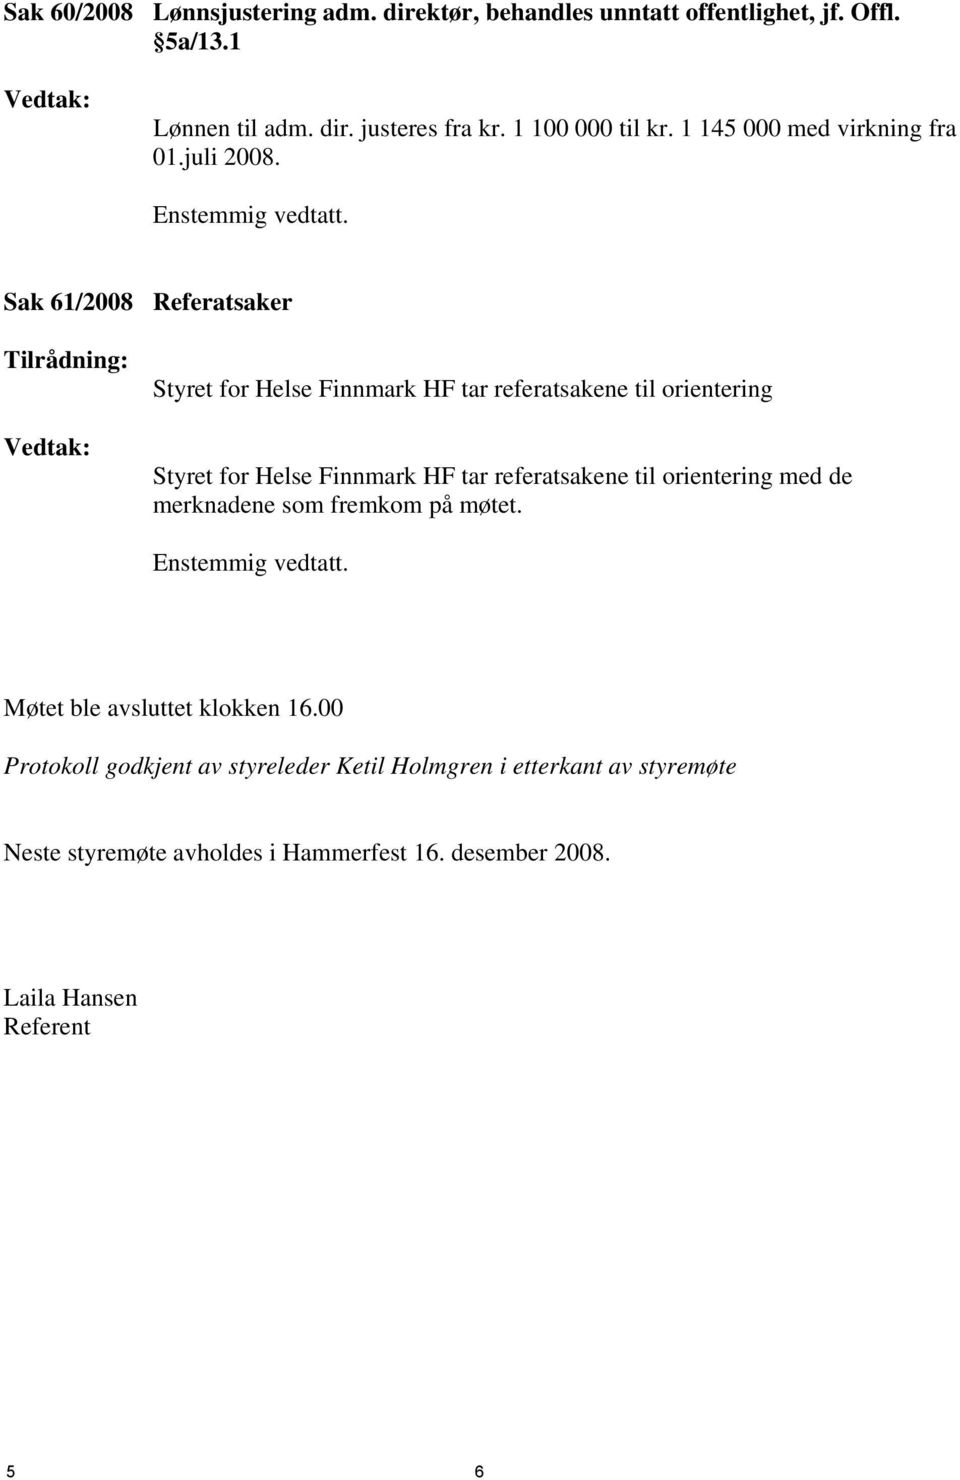 Sak 61/2008 Referatsaker Tilrådning: Vedtak: Styret for Helse Finnmark HF tar referatsakene til orientering Styret for Helse Finnmark HF tar referatsakene til